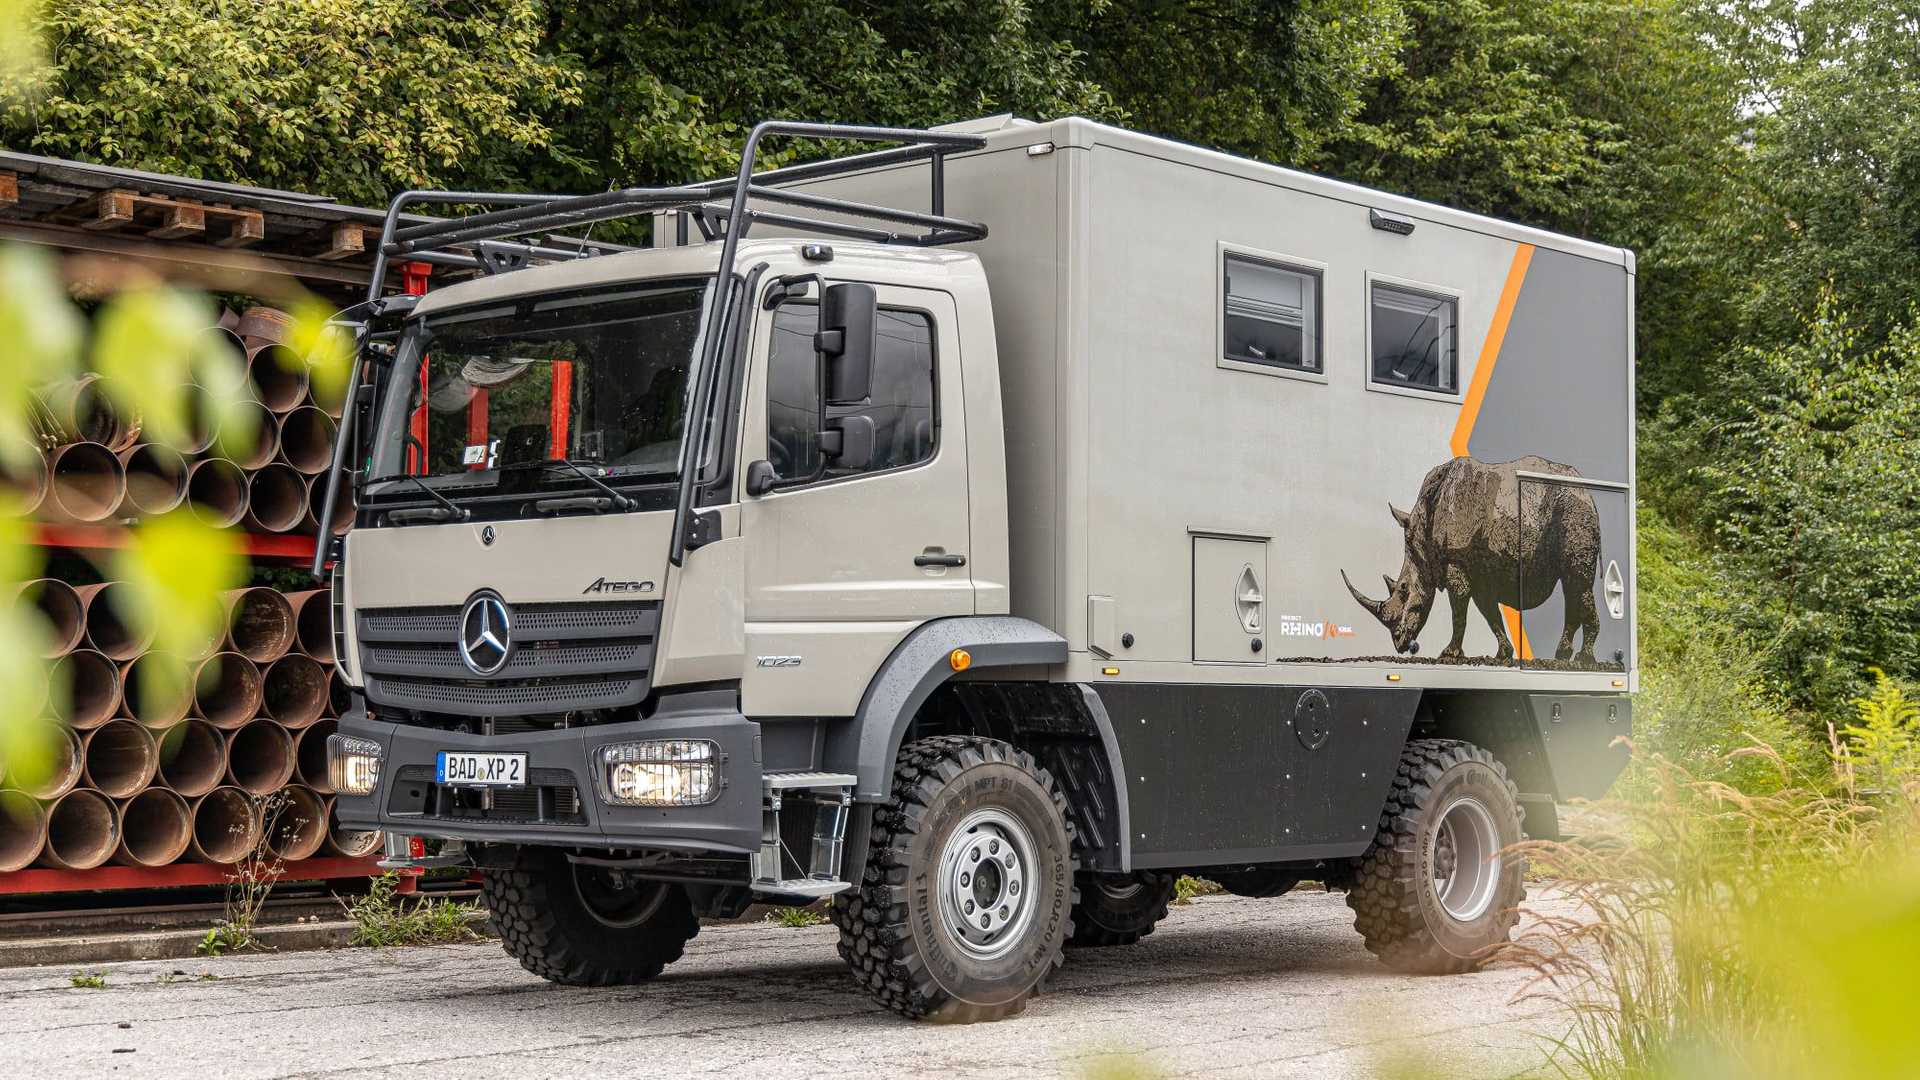 Mercedes Atego-Based Off-Road Camper สายแคมป์โดนใจสิ่งนี้แน่นอน แต่ราคาขนาดนี้ซื้อบ้านเลยไหม